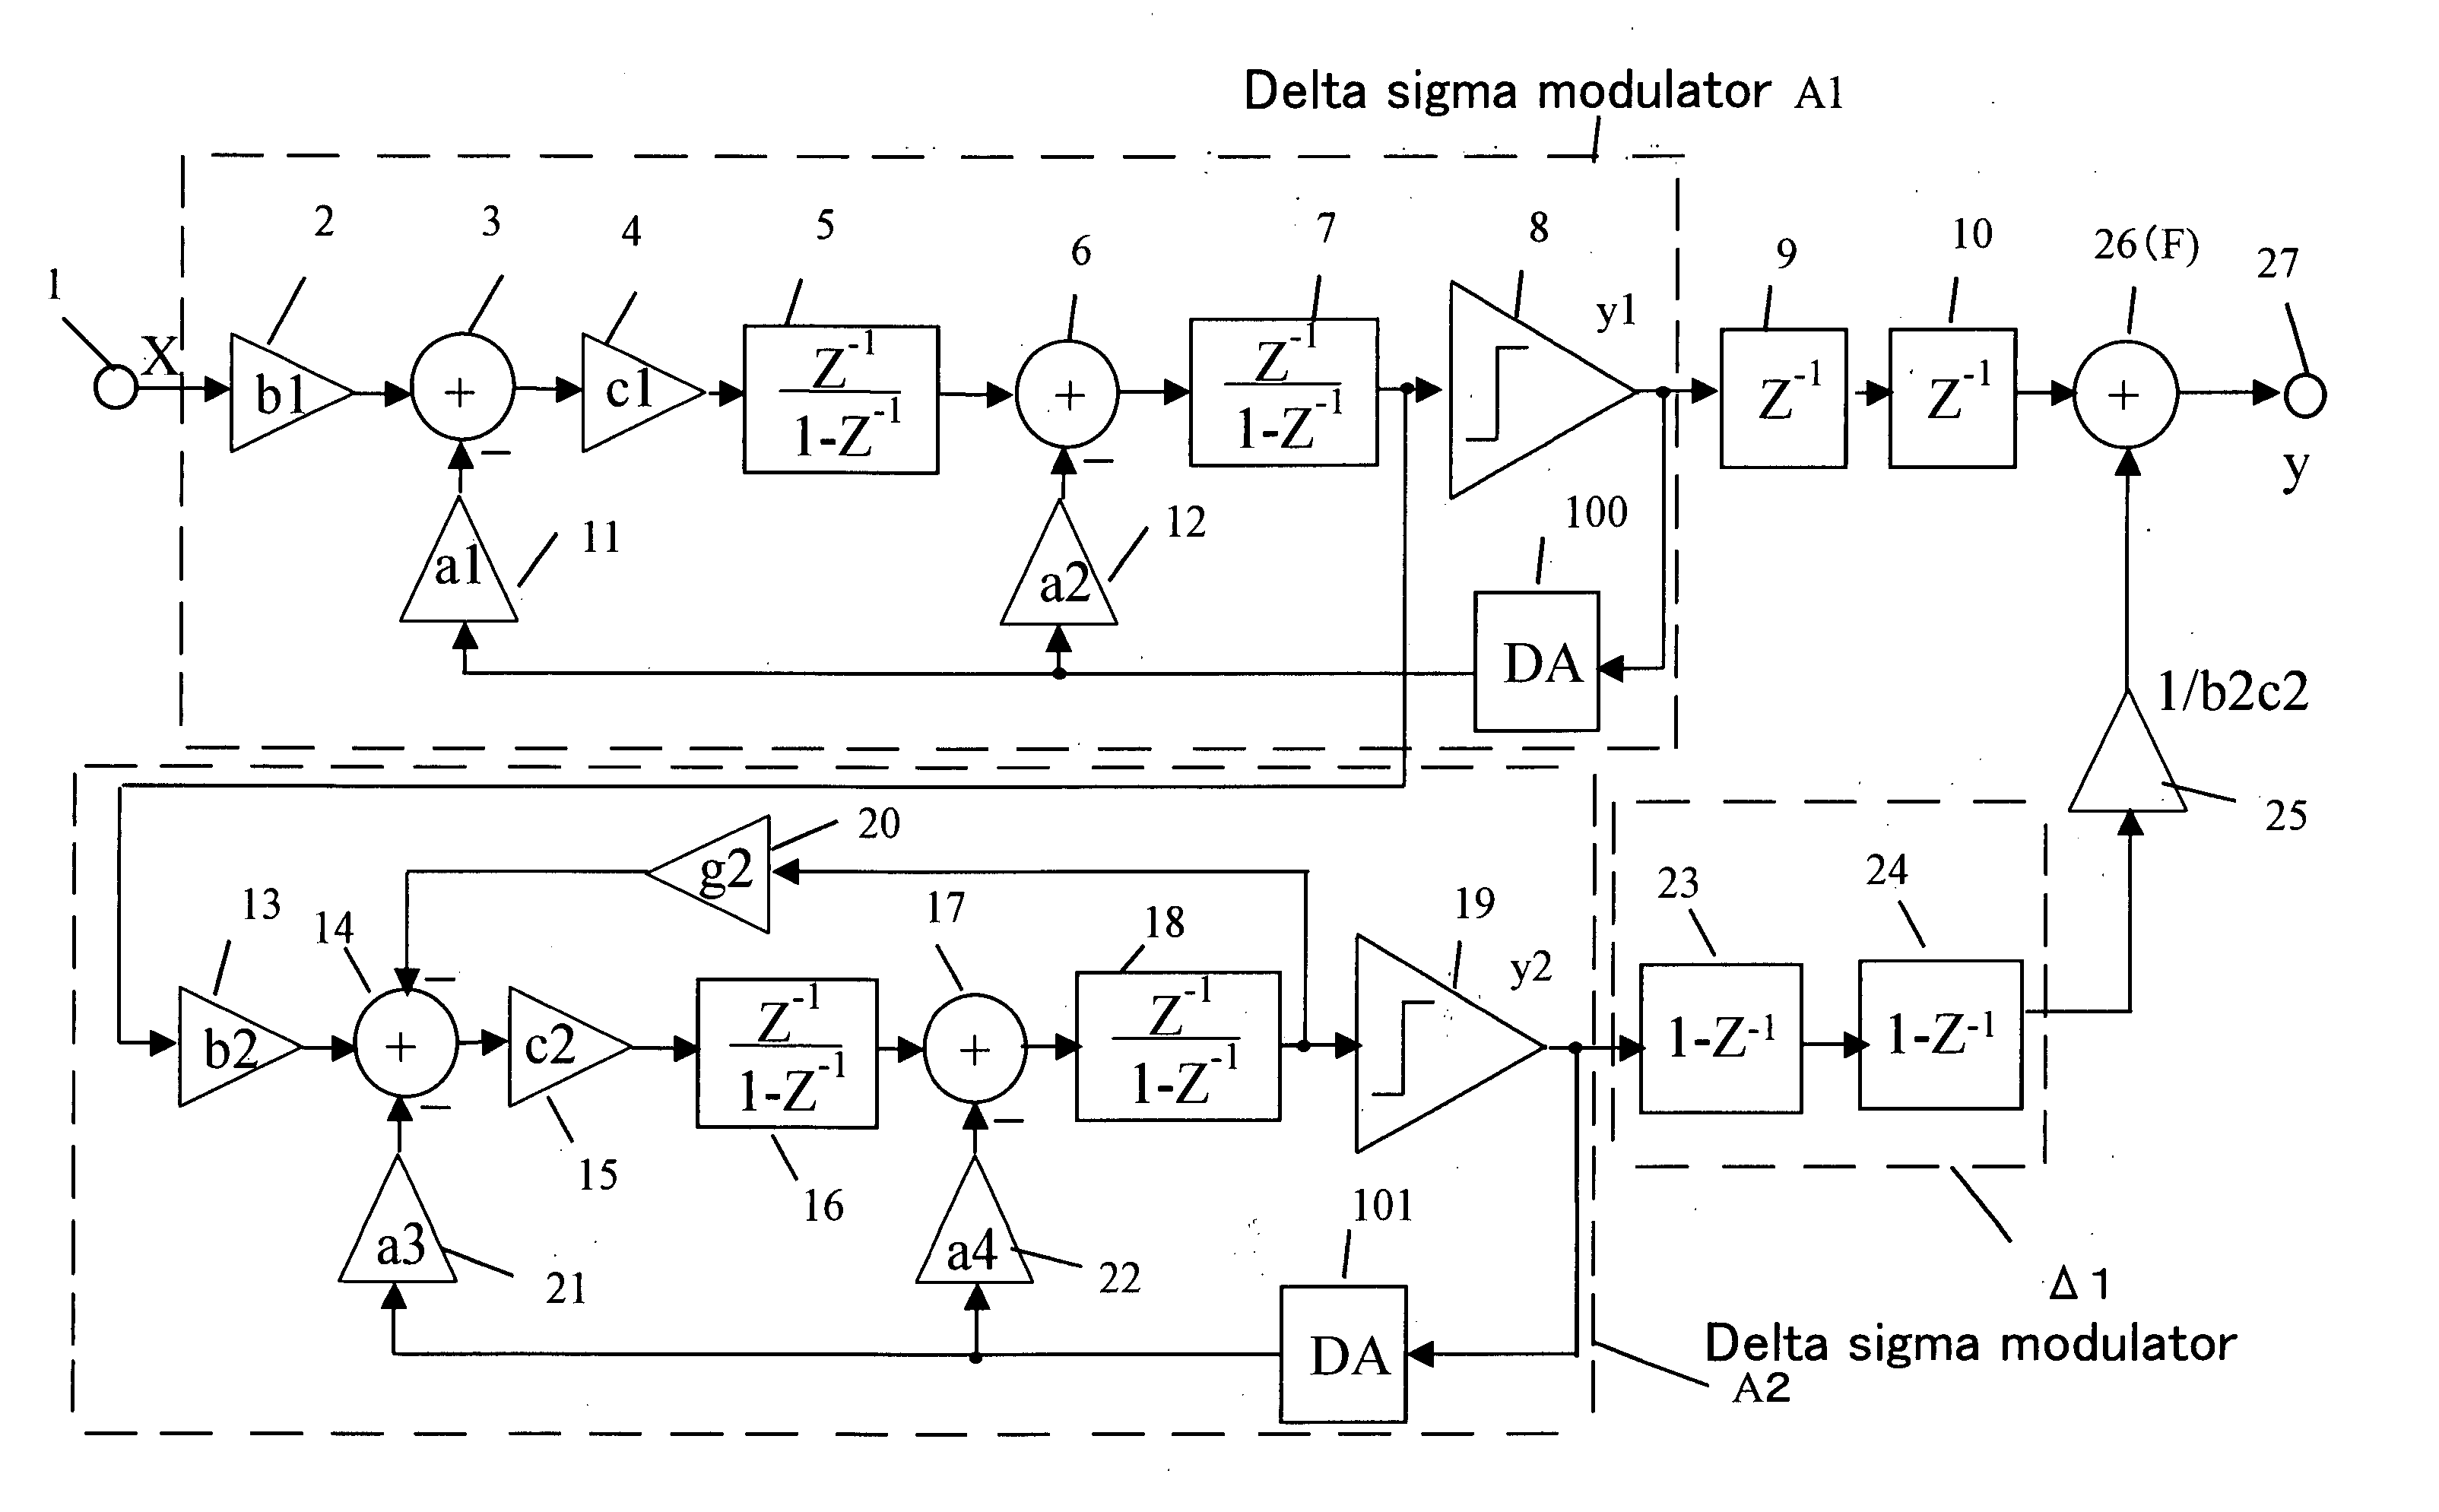 Delta sigma modulating apparatus